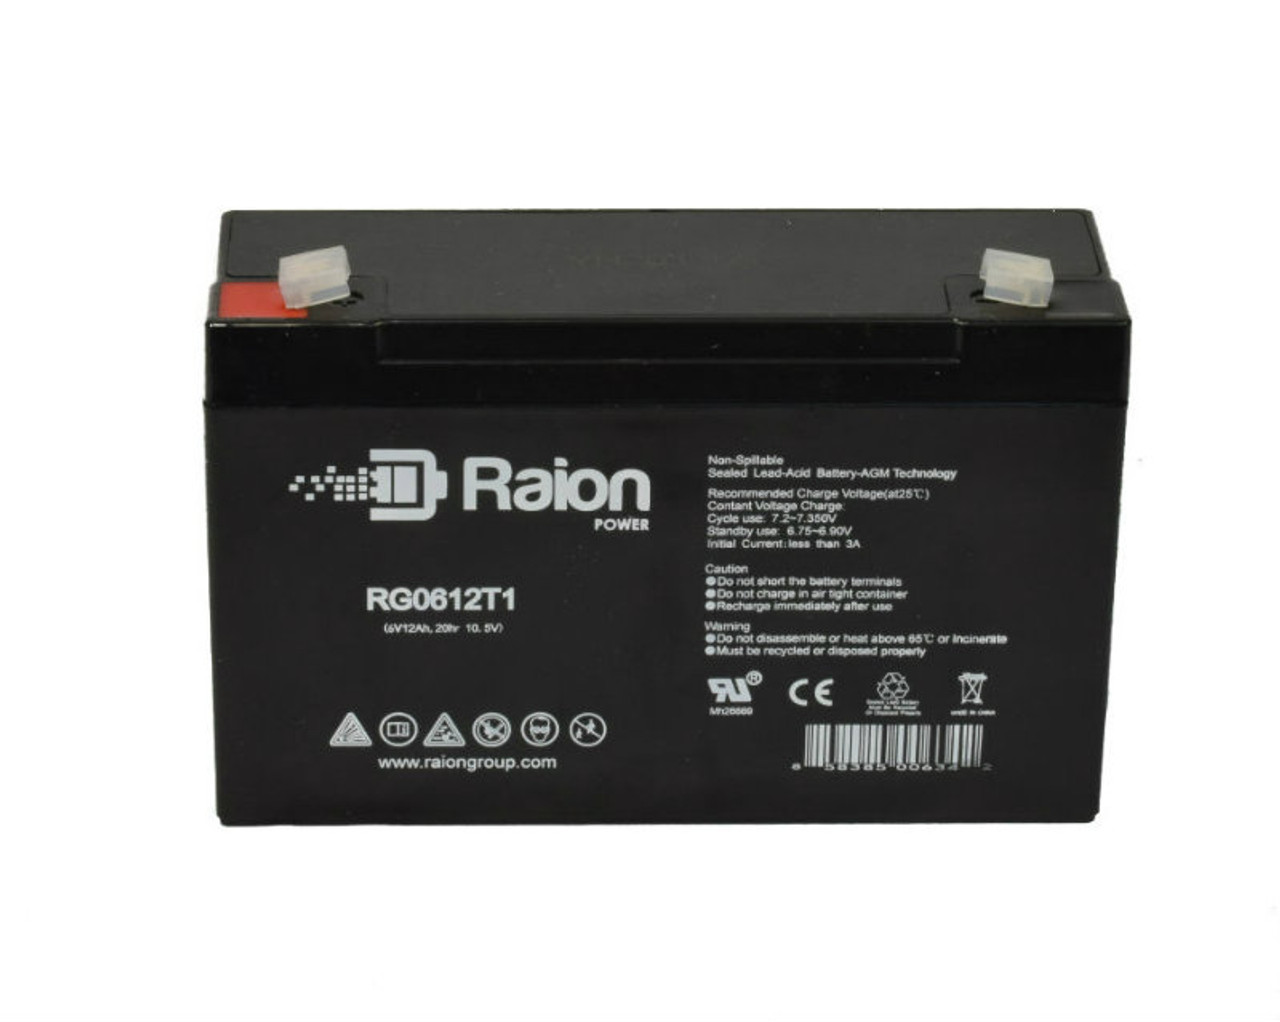 Raion Power RG06120T1 SLA Battery for Light Alarms 2RPG3